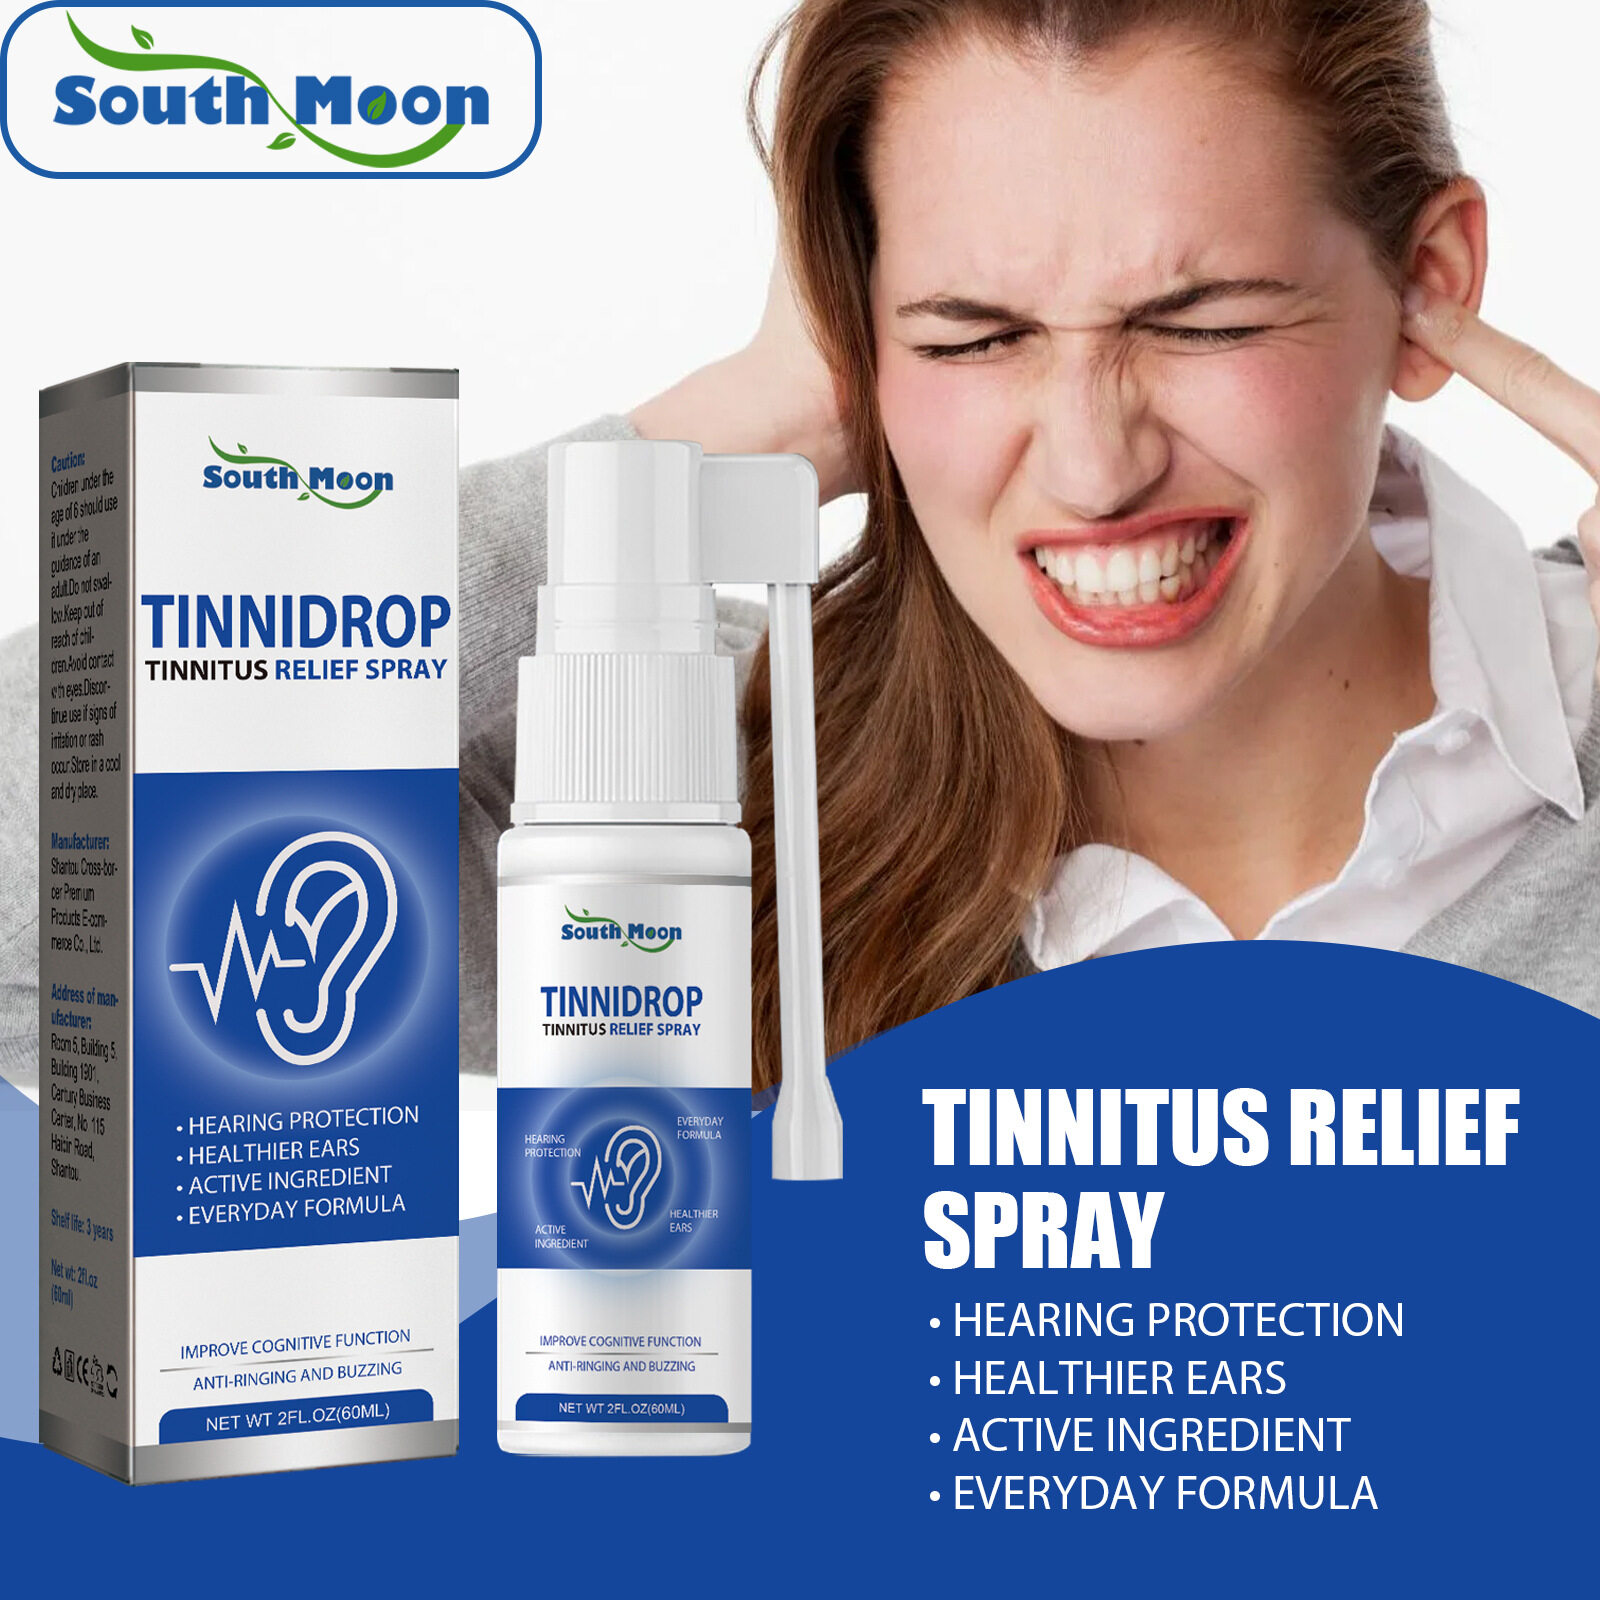 South Moon Tinnidrop Tinnitus Relief Spray Relieve Tinnitus Ear Back Ear